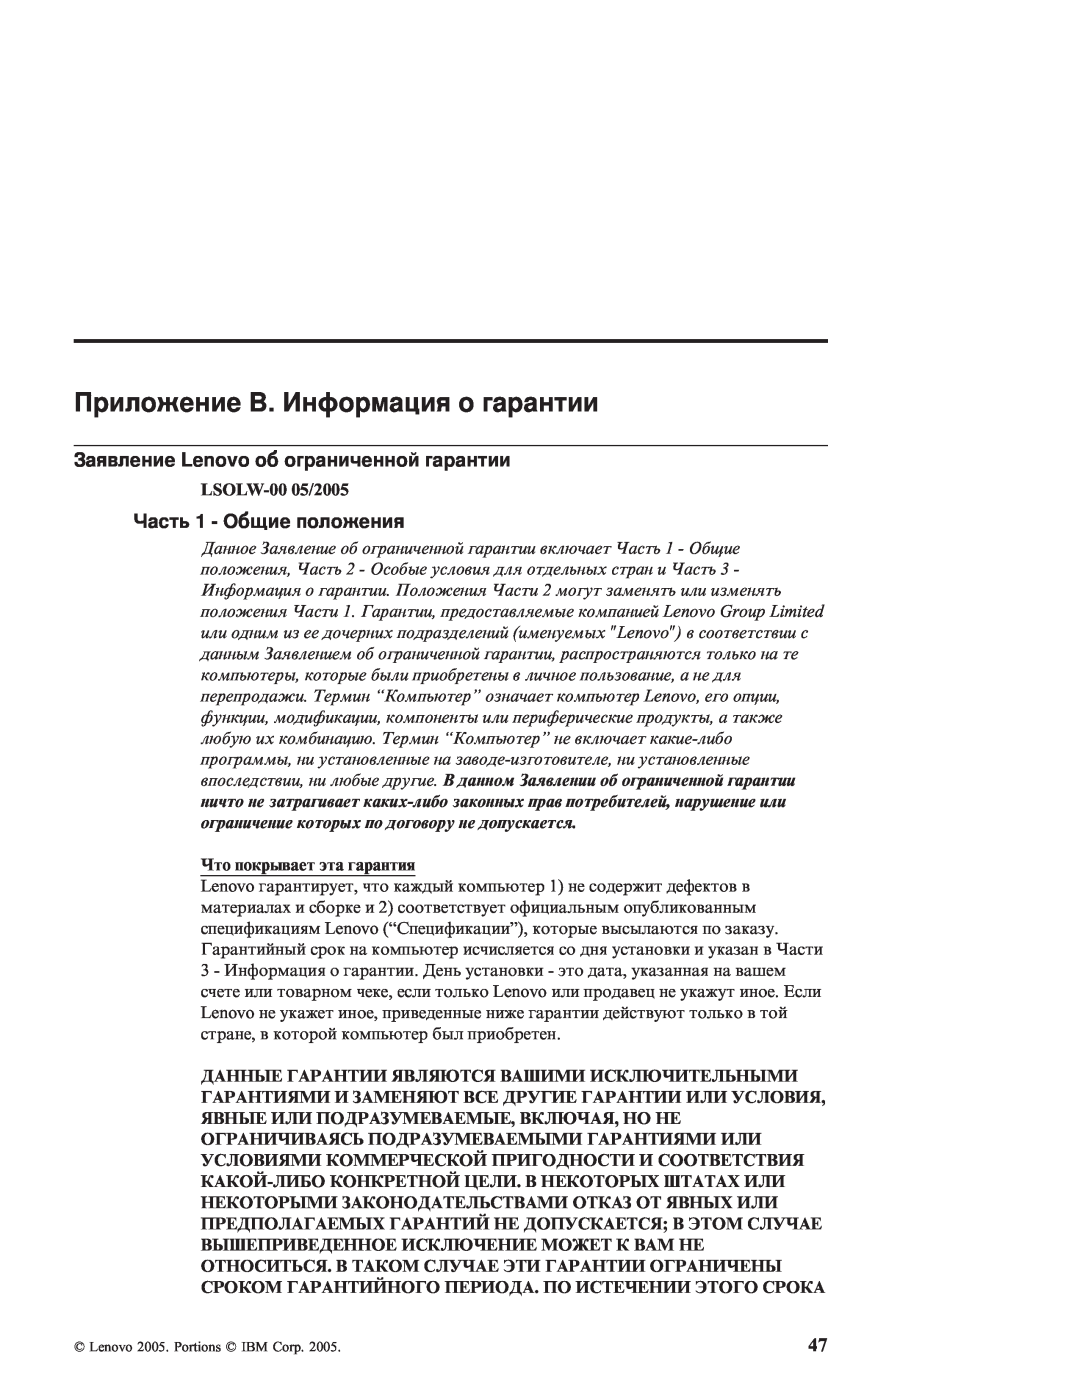 IBM R51E manual Приложение B. Информация о гарантии, Заявление Lenovo об ограниченной гарантии, Часть 1 - Общие положения 